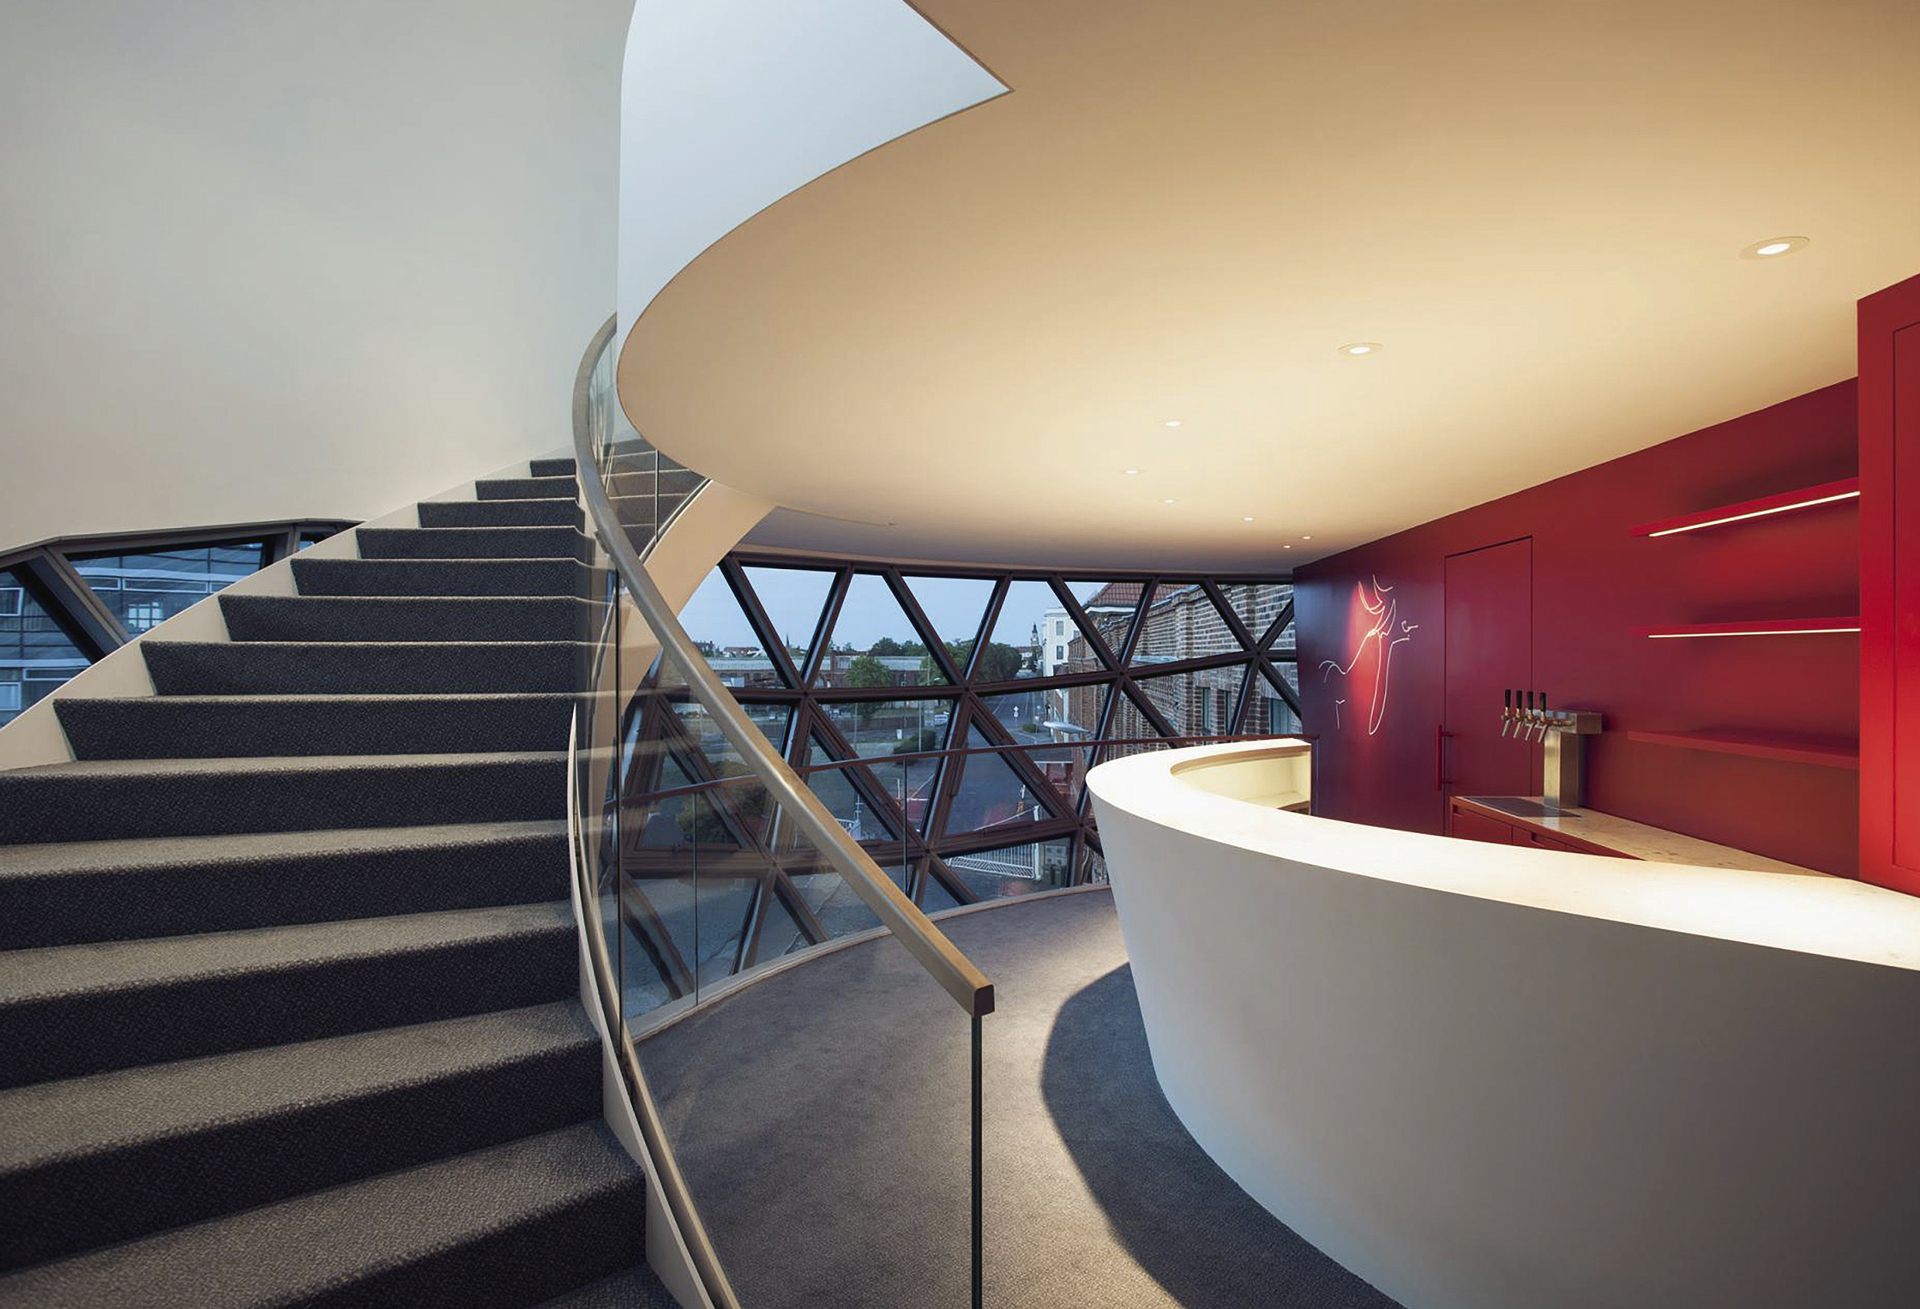 Alabaarin seinää koristaa Niemeyerin piirros. Seinän punainen väri on tyypillistä Niemeyerin arkkitehtuurissa. Portaat johtavat ylätasolle. Kuva: Margret Hoppe